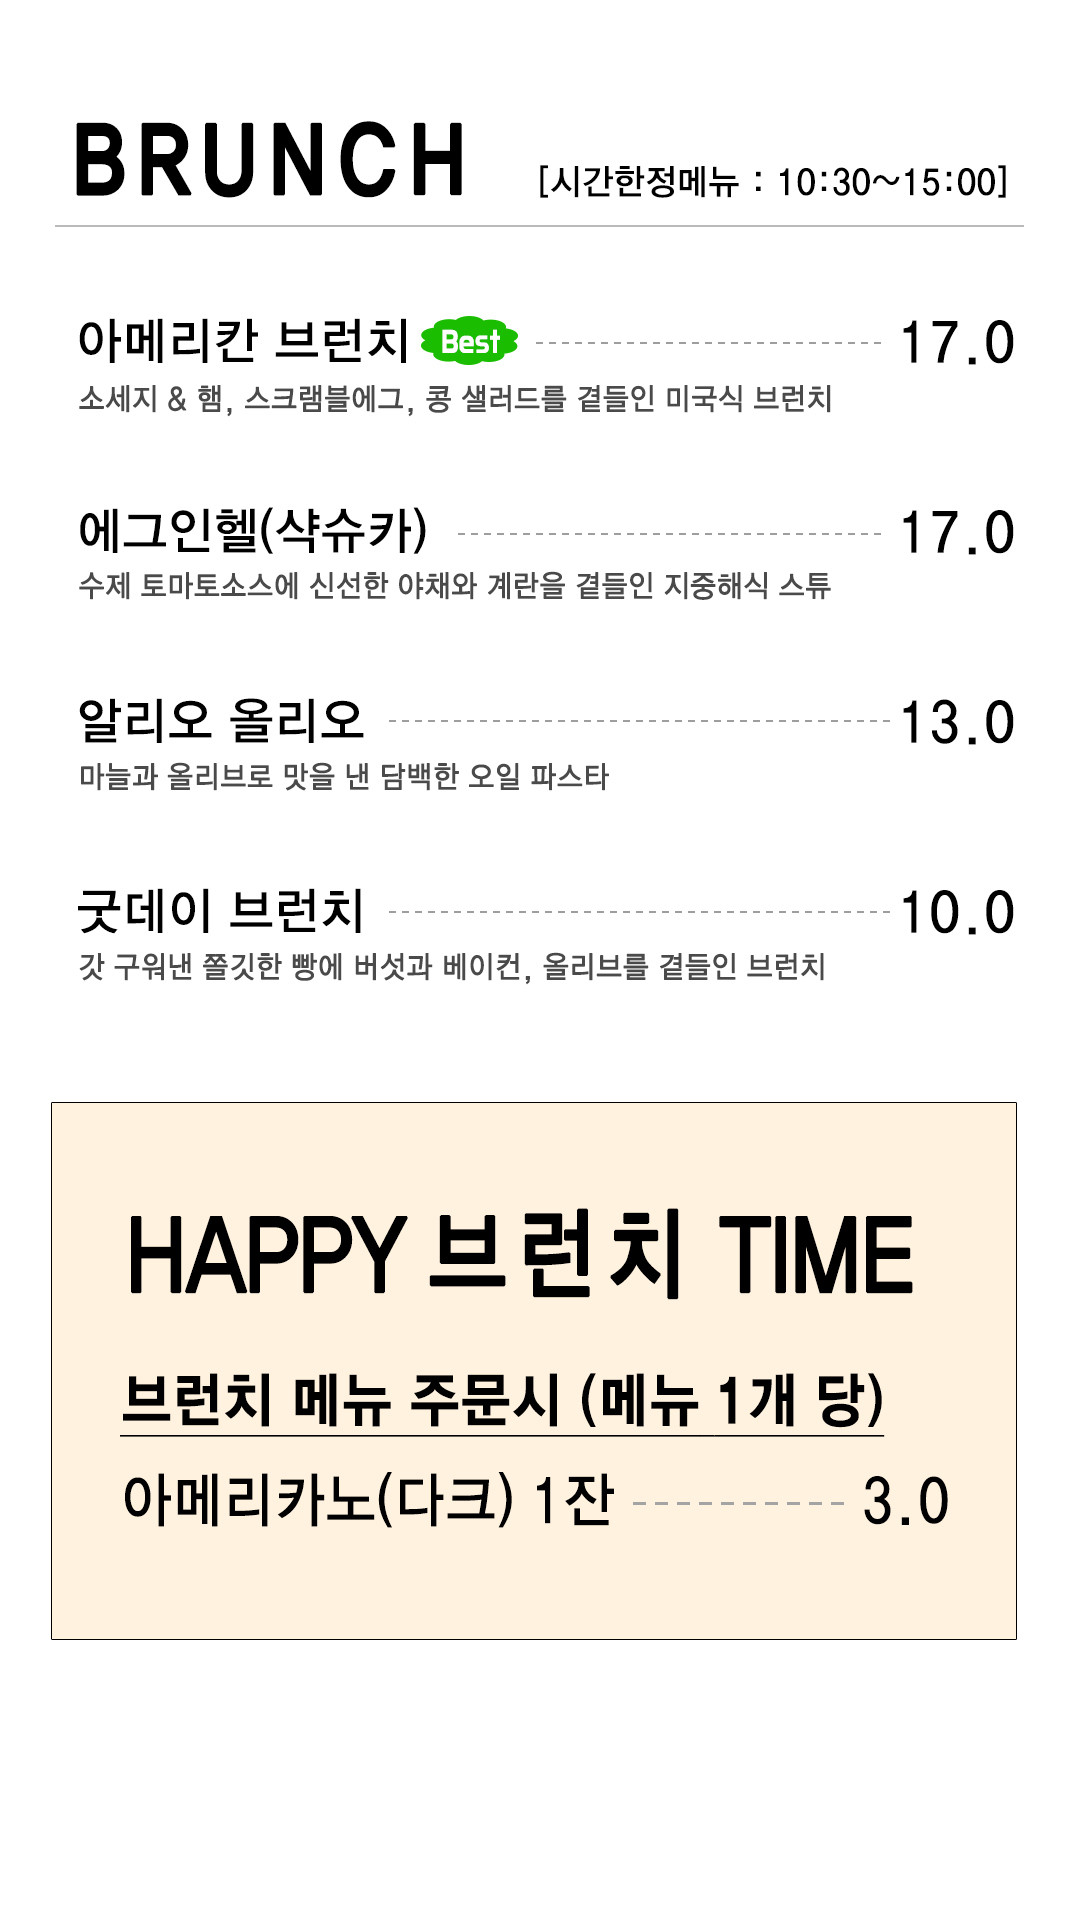 김포 양촌 복합문화공간 대형 브런치 베이커리 카페 55갤런